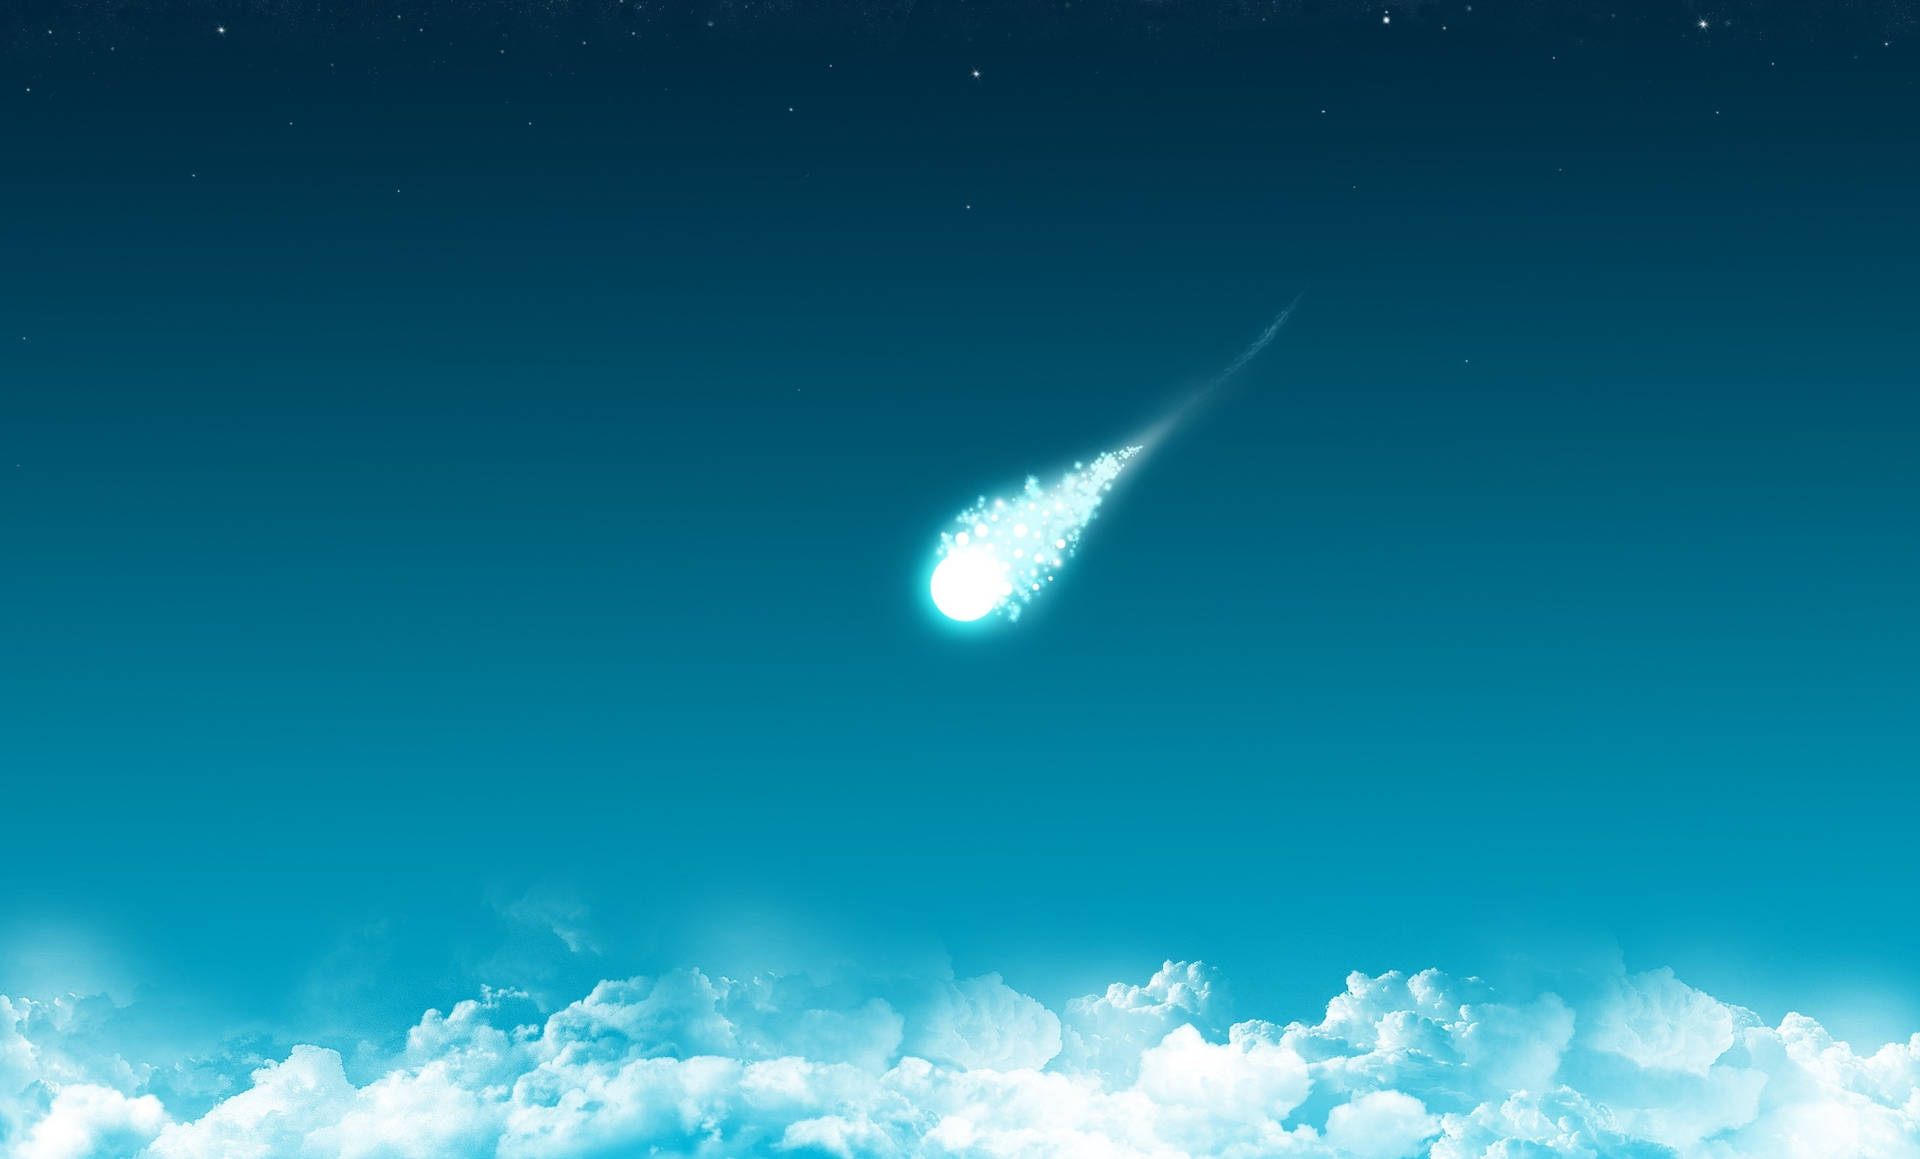 Comet Cloud Art Wallpaper